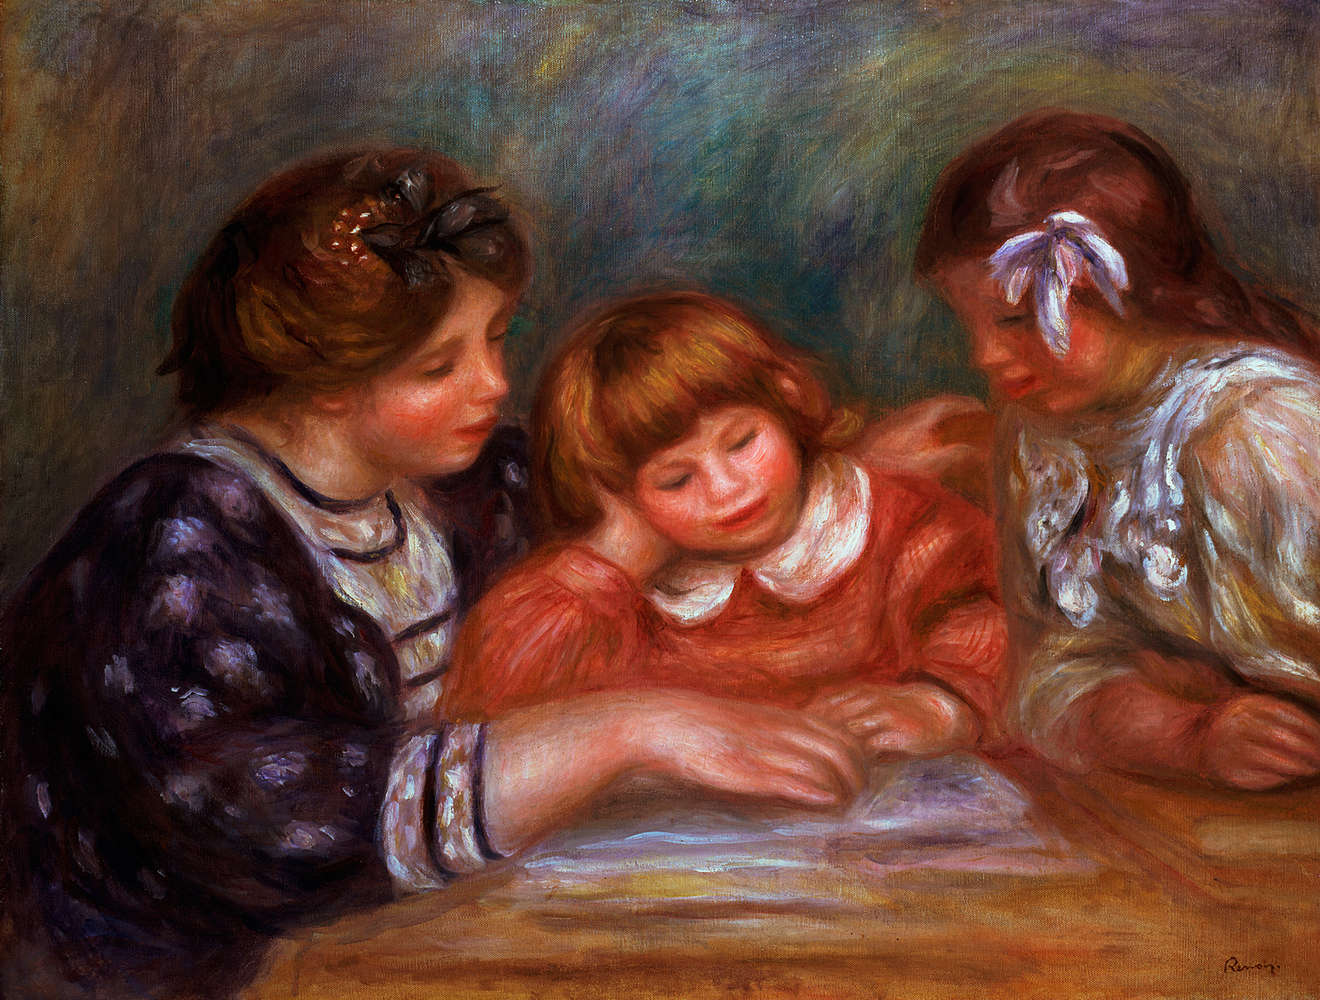             Mural "La lección" de Pierre Auguste Renoir
        